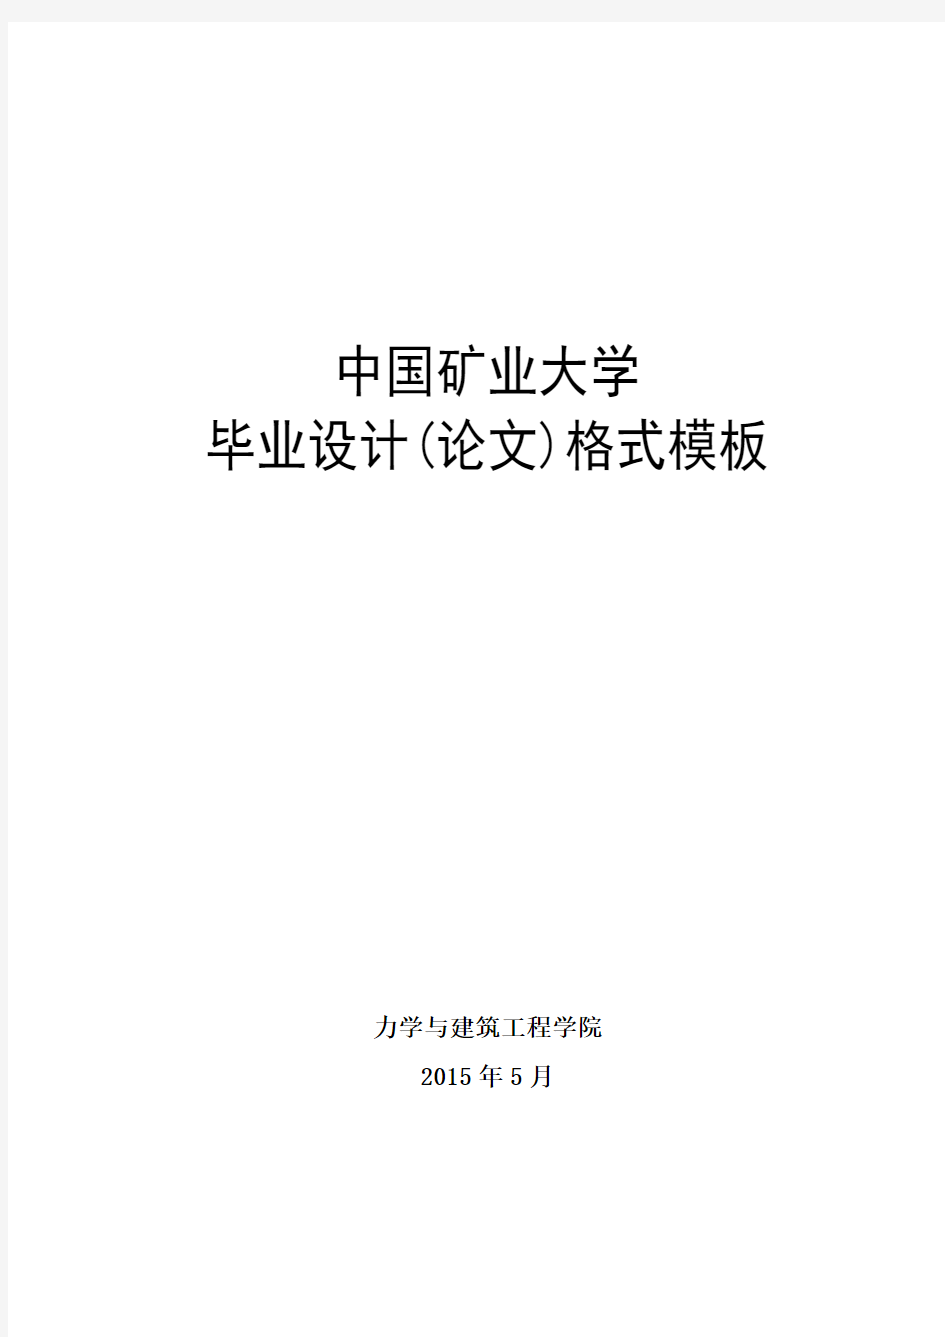 03-201505-中国矿业大学毕业设计(论文)格式模板